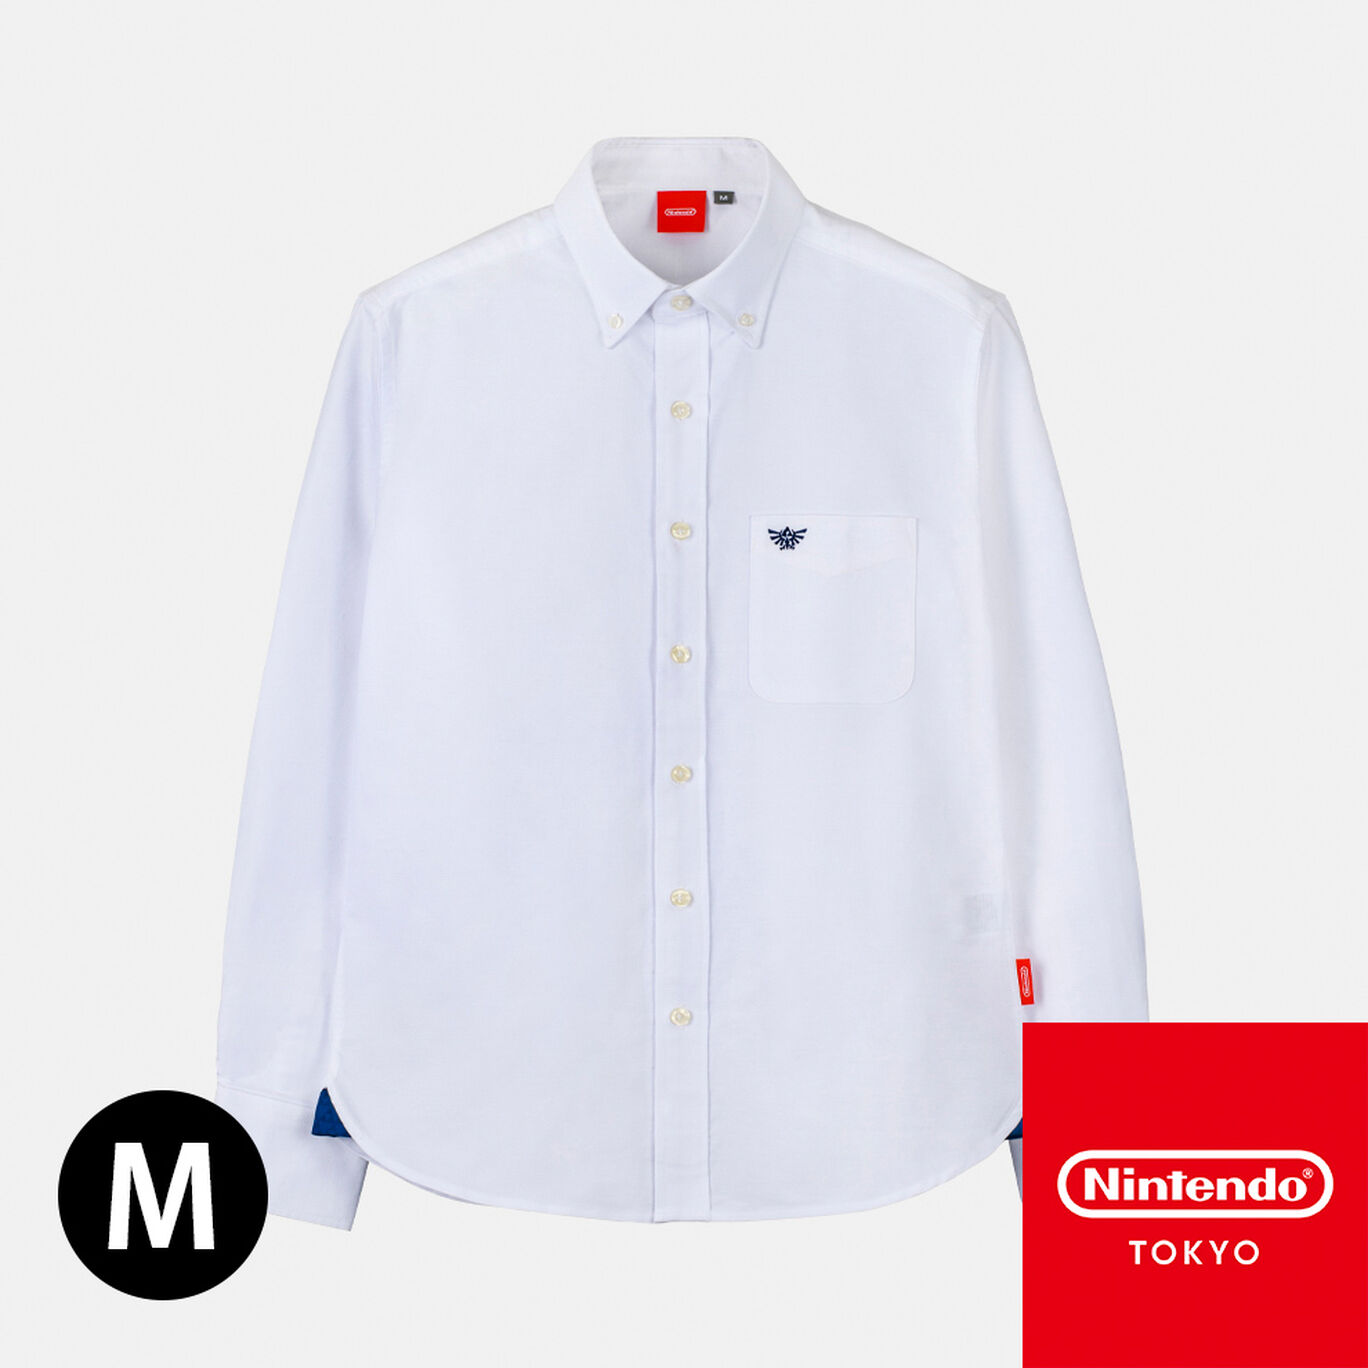 シャツ ハイラルの紋章 M ゼルダの伝説【Nintendo TOKYO取り扱い商品】